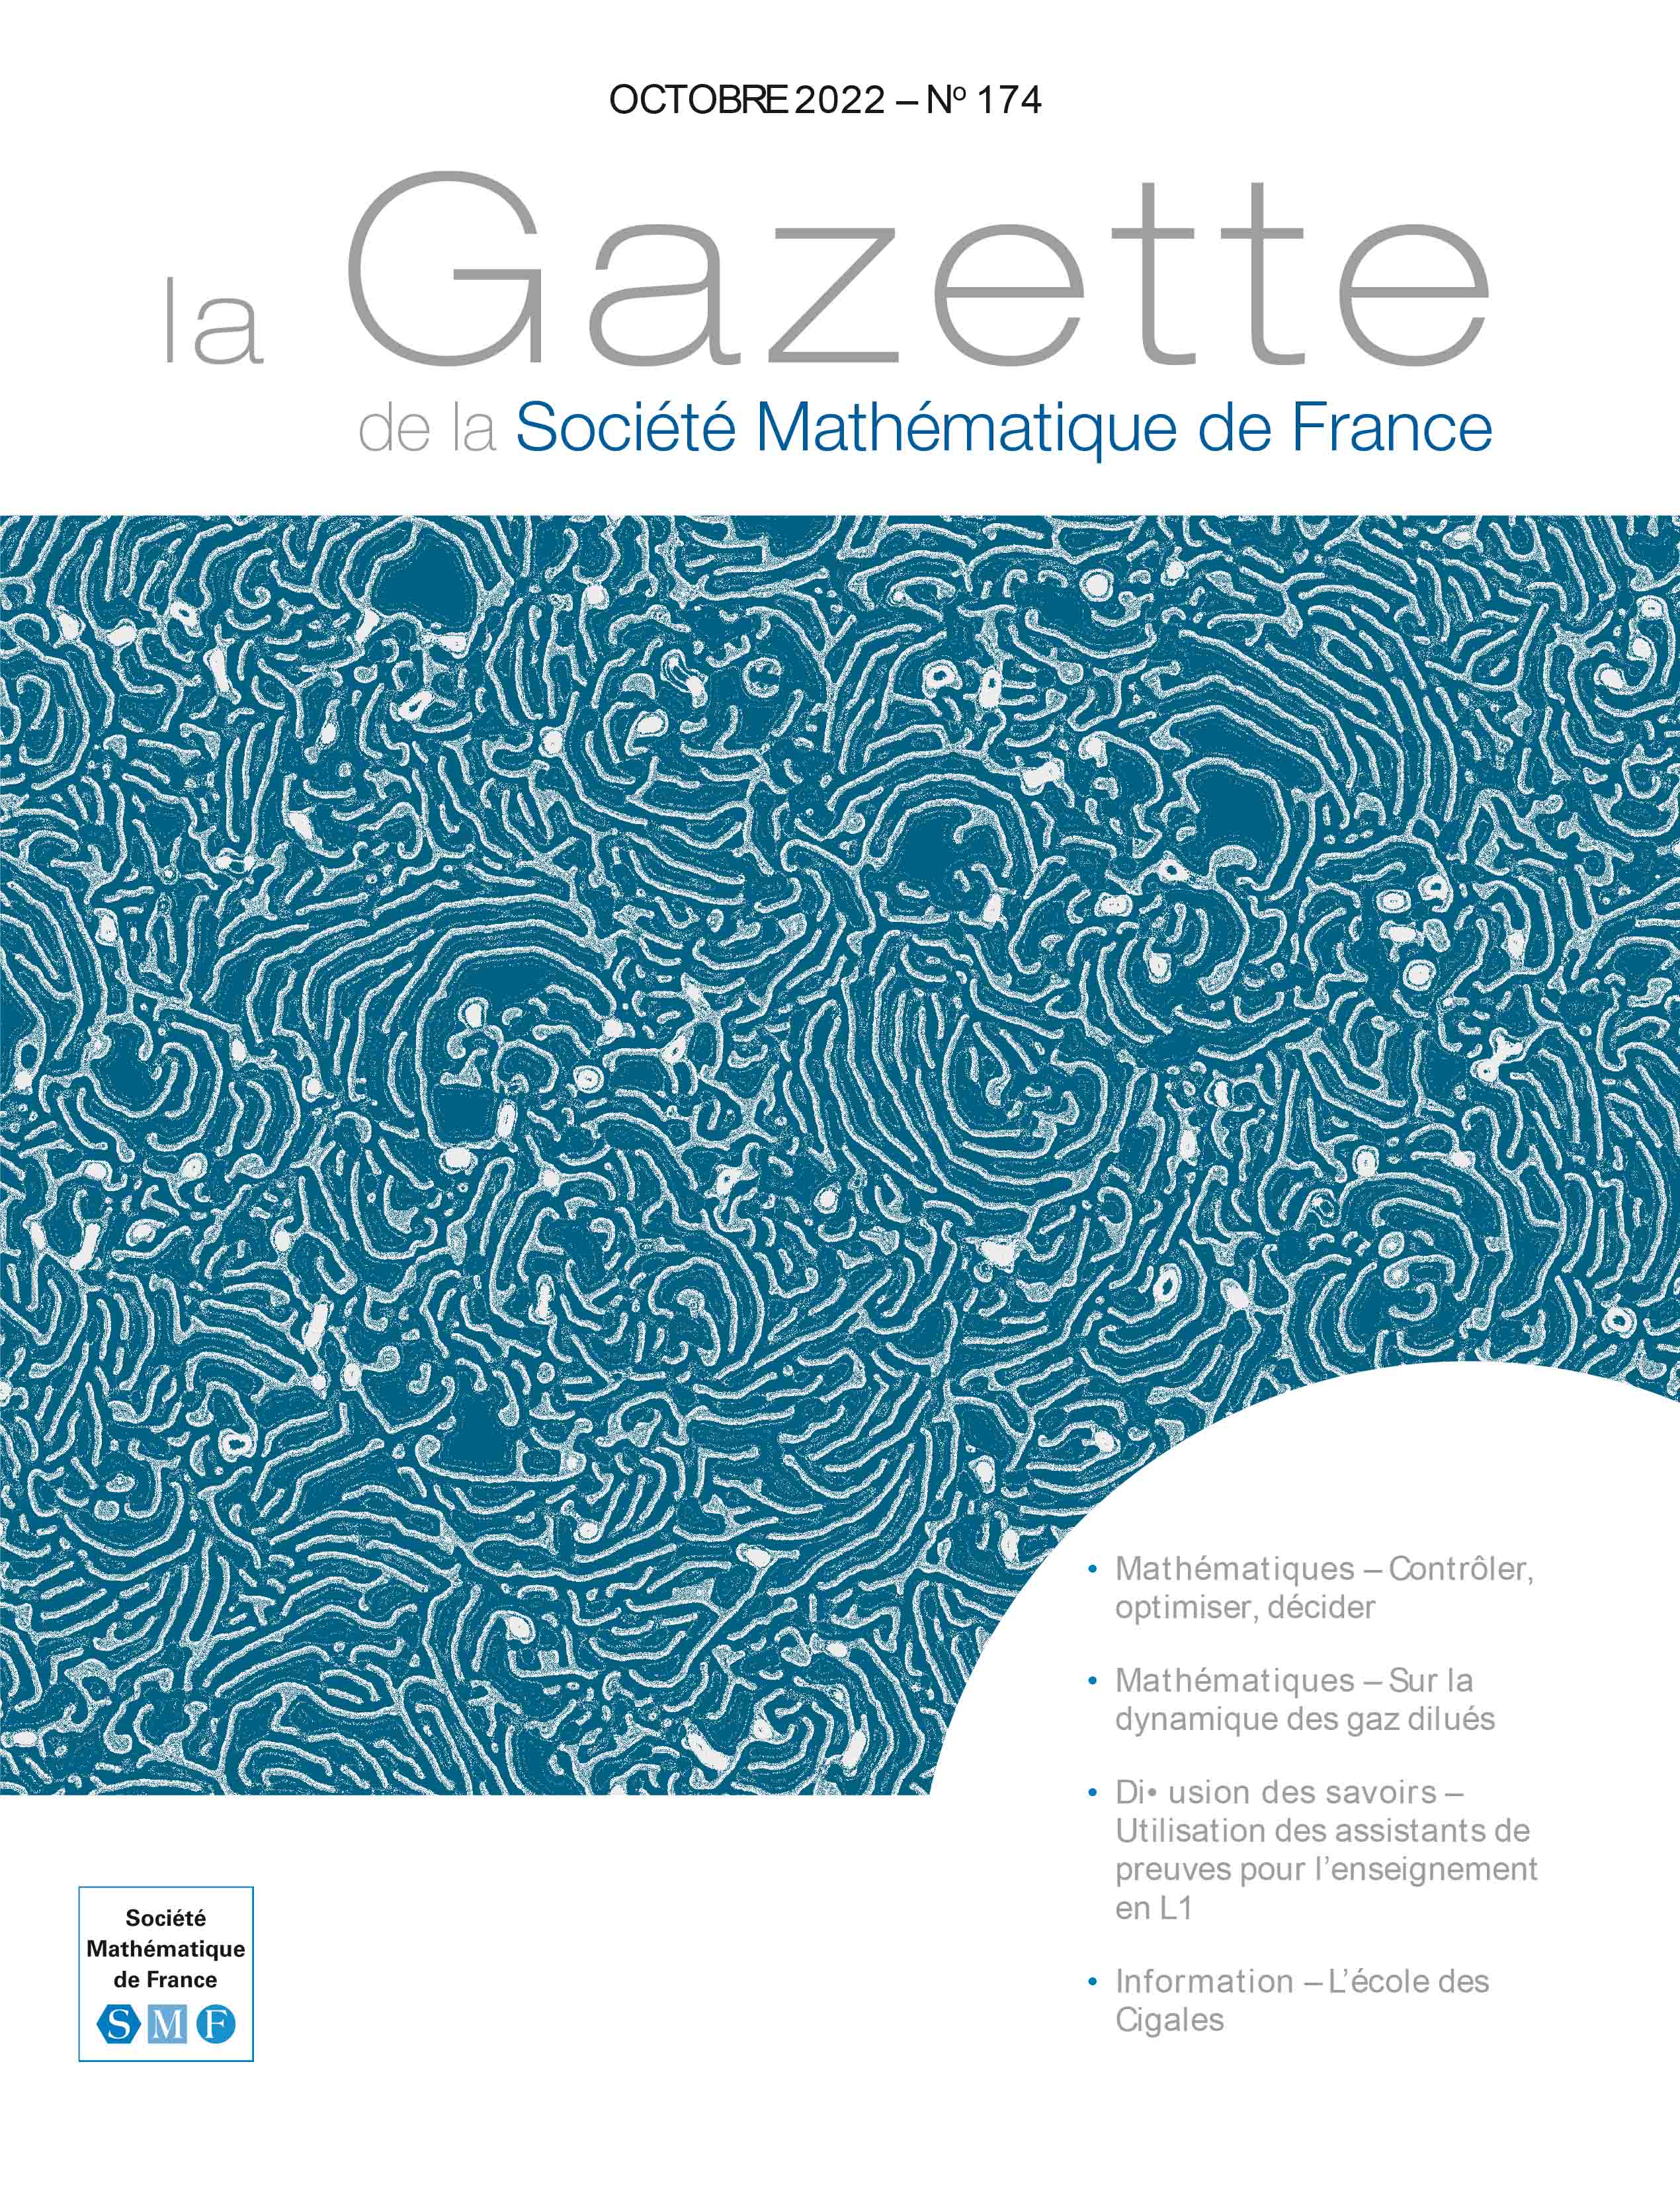 La Gazette de la Société Mathématique de France 174 (octobre 2022)